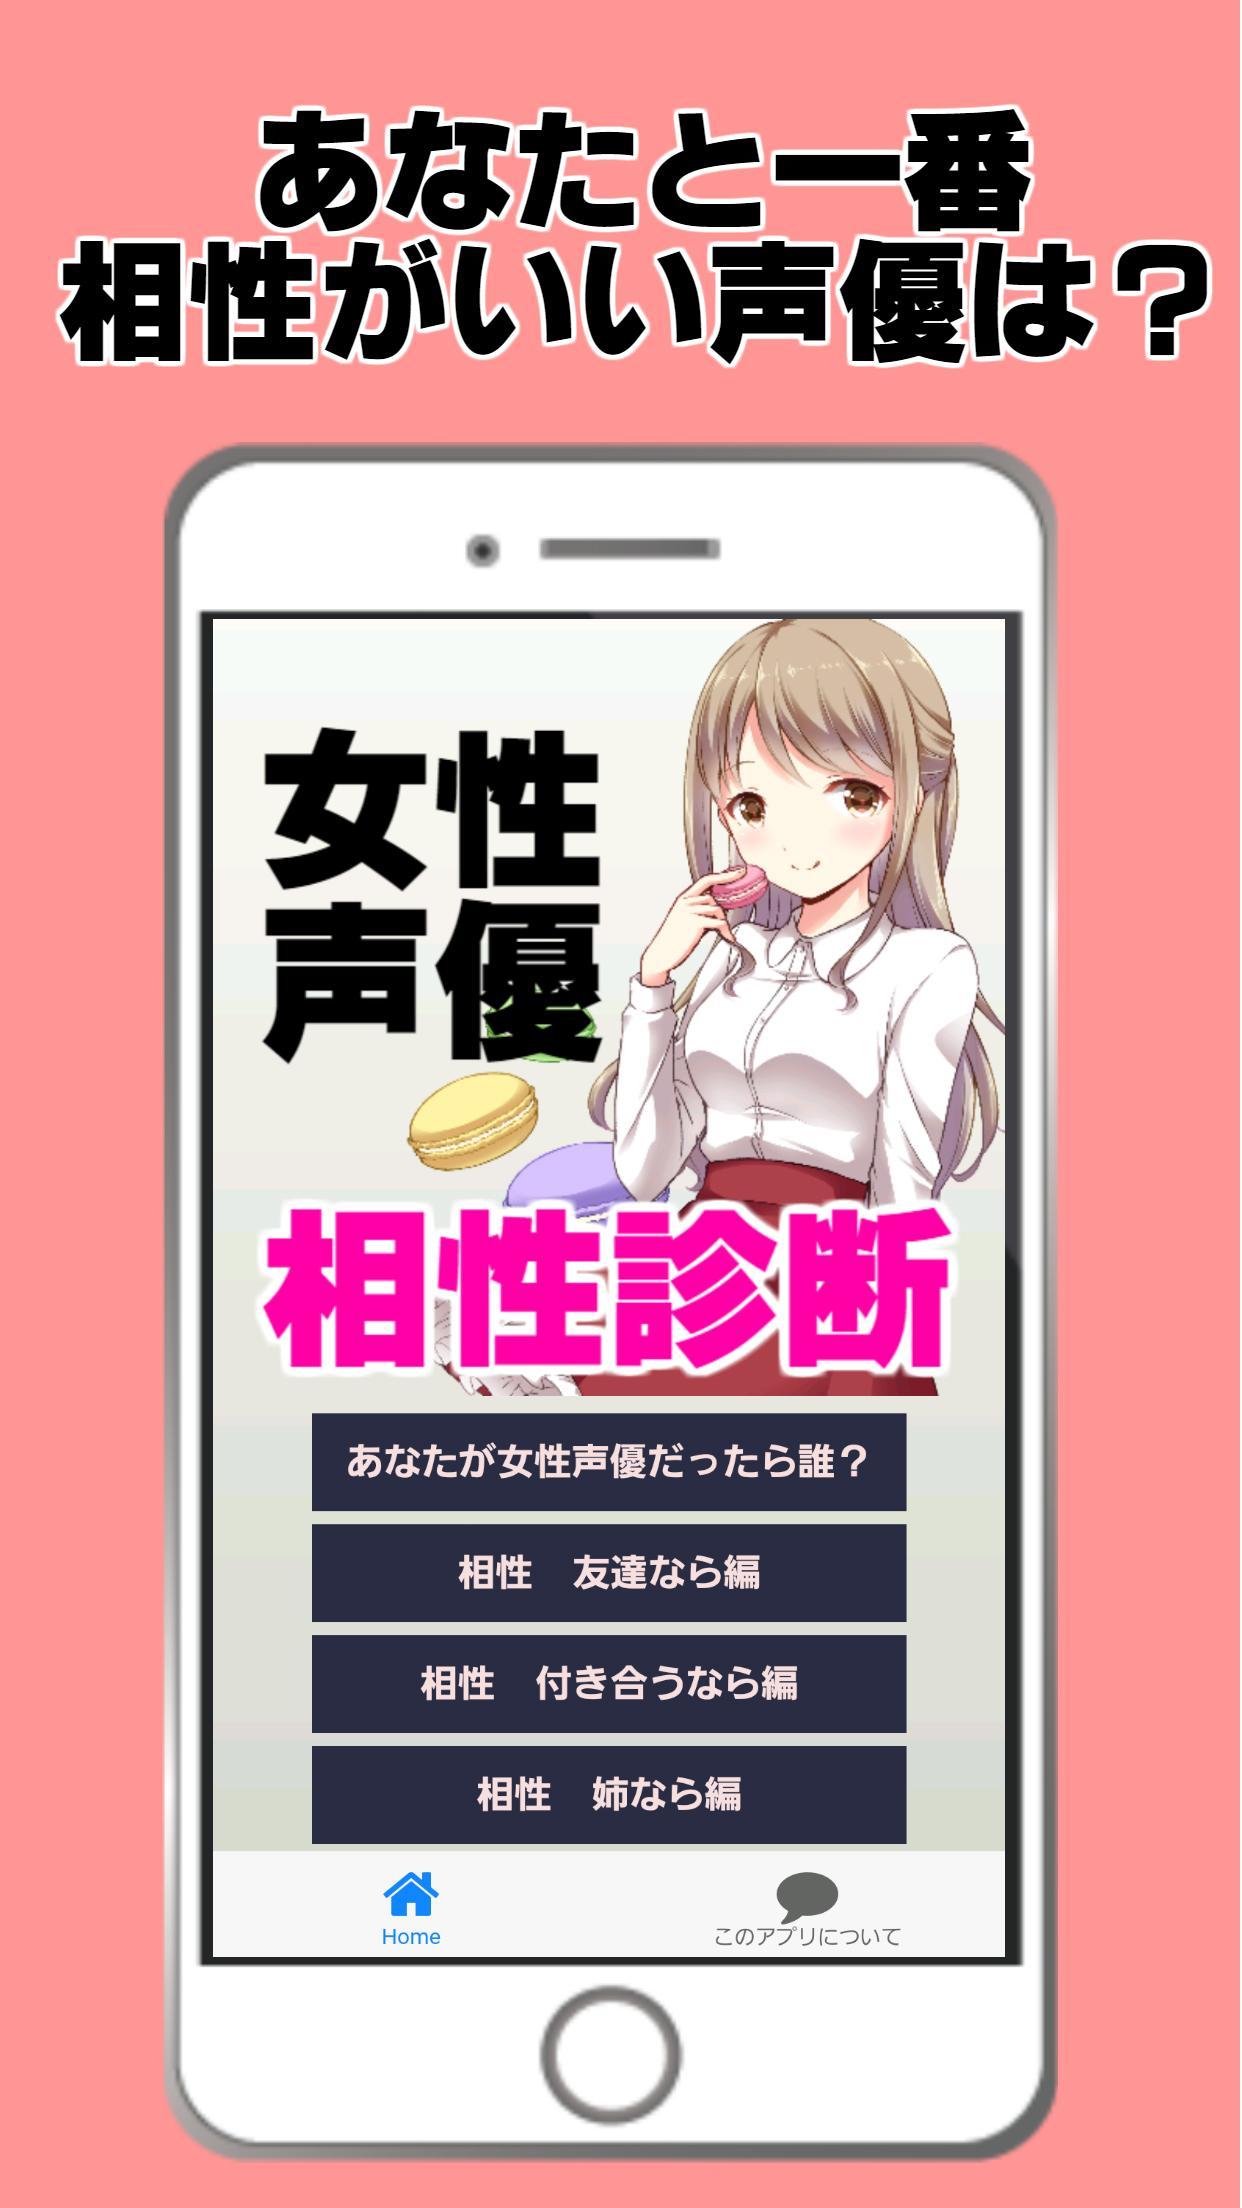 女性声優と相性診断 美少女 萌えゲーム 恋愛アニメ マンガ For Android Apk Download